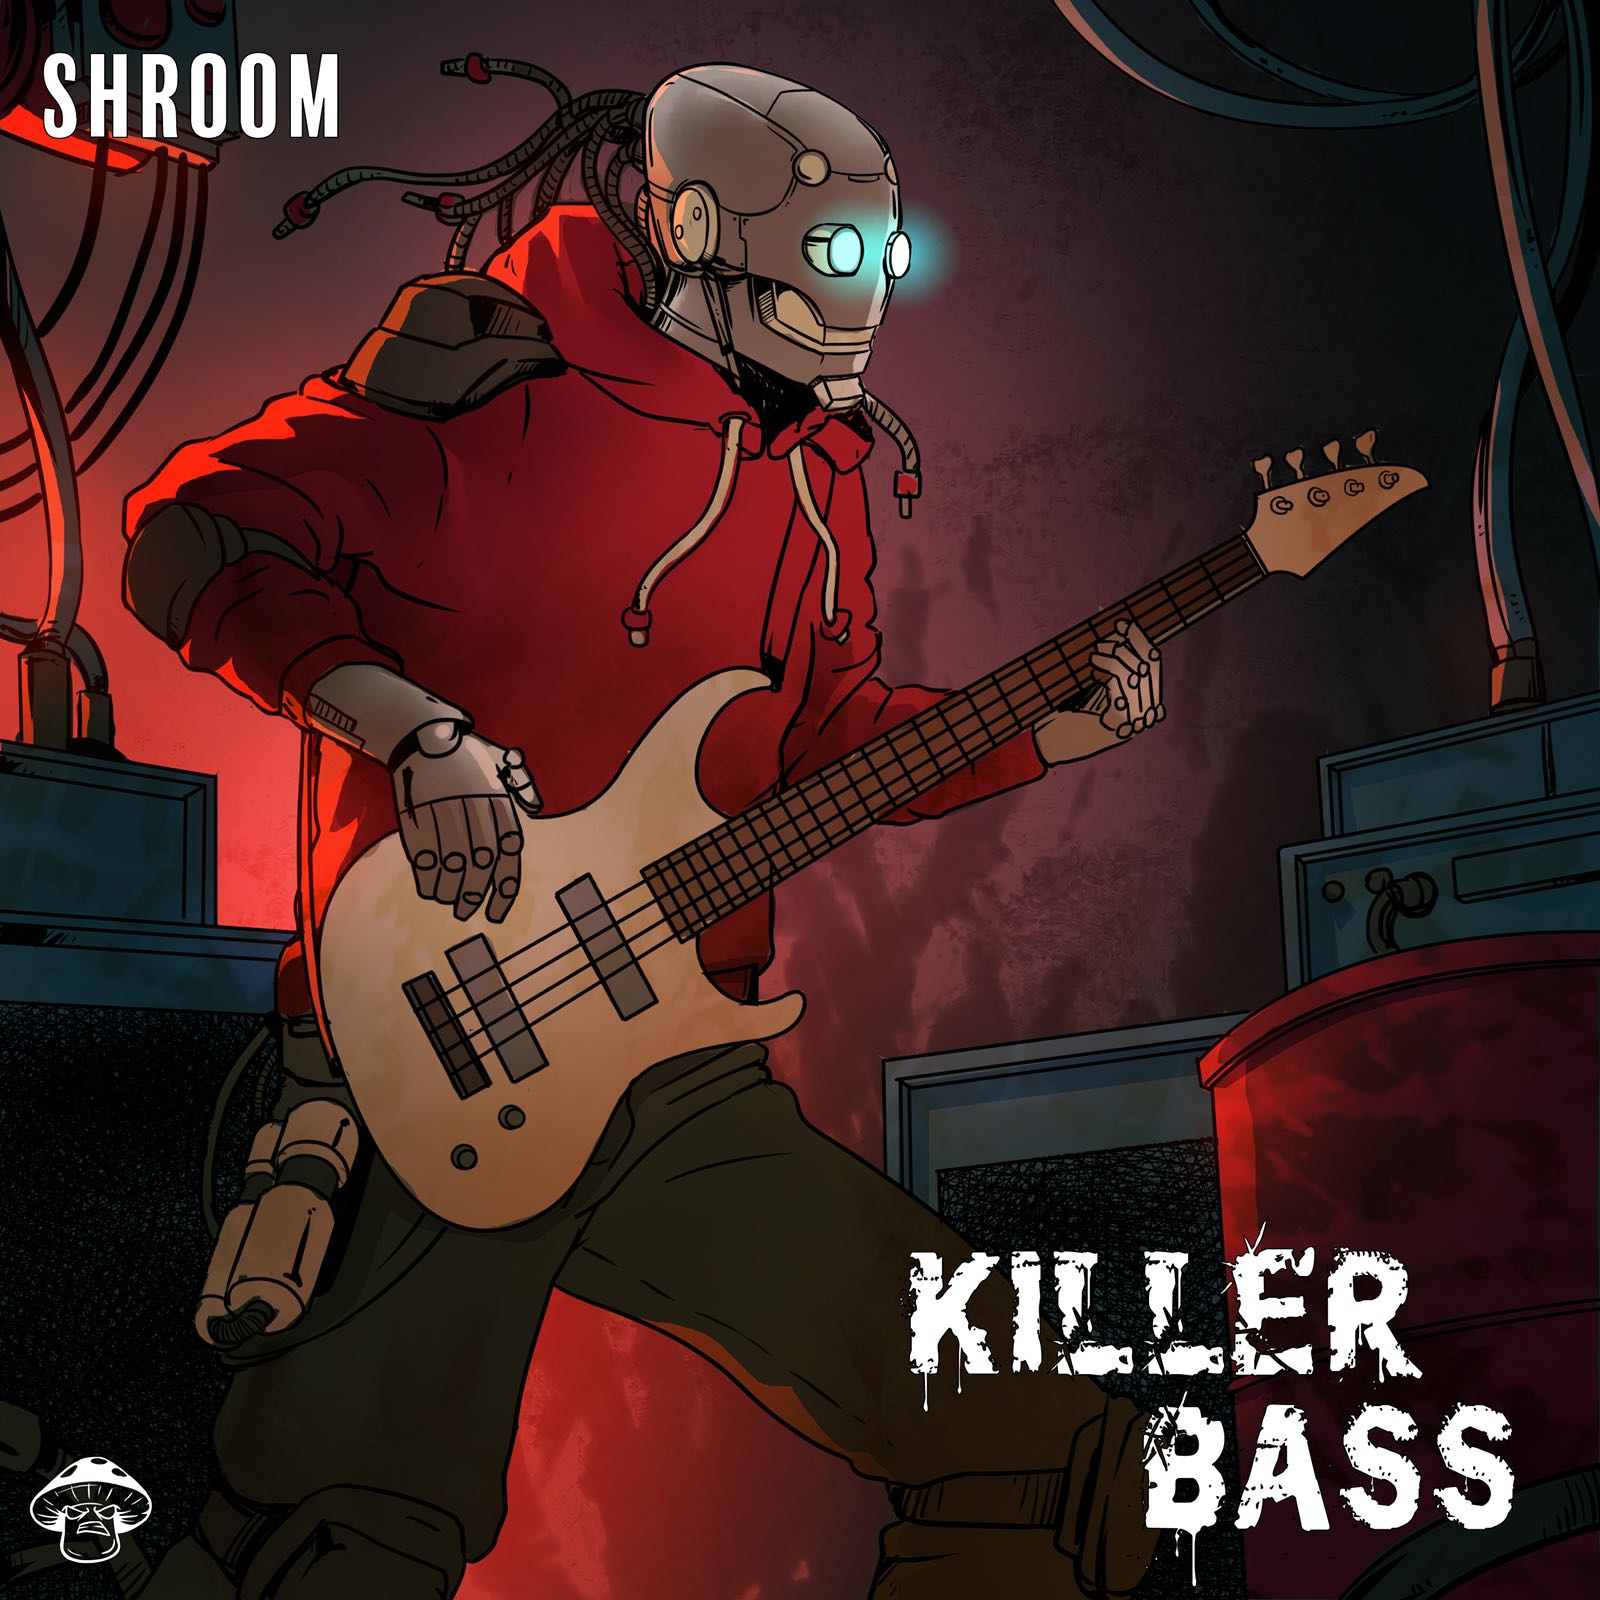 دانلود مجموعه لوپ گیتار بیس / Shroom Killer Bass